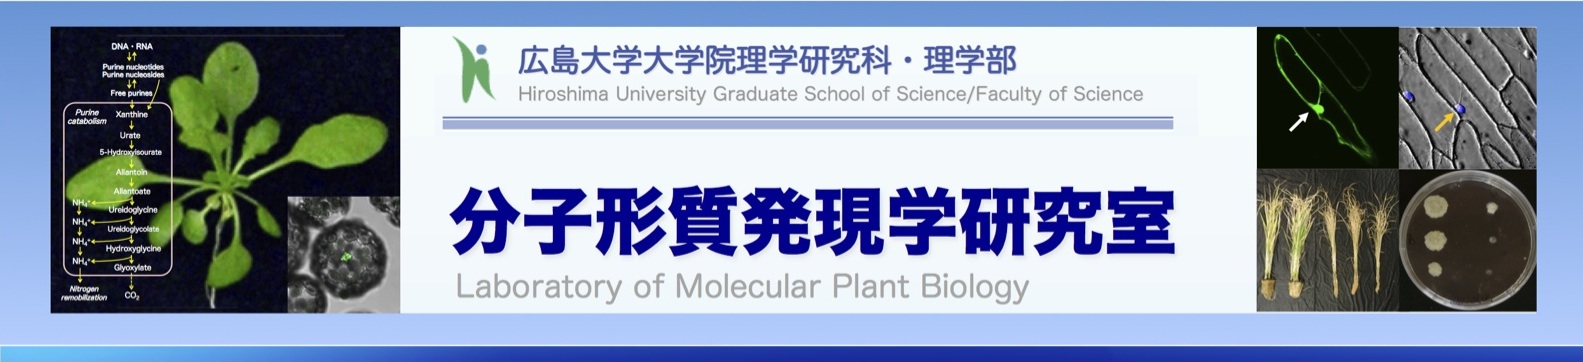 分子形質発現学研究室 - 広島大学大学院理学研究科